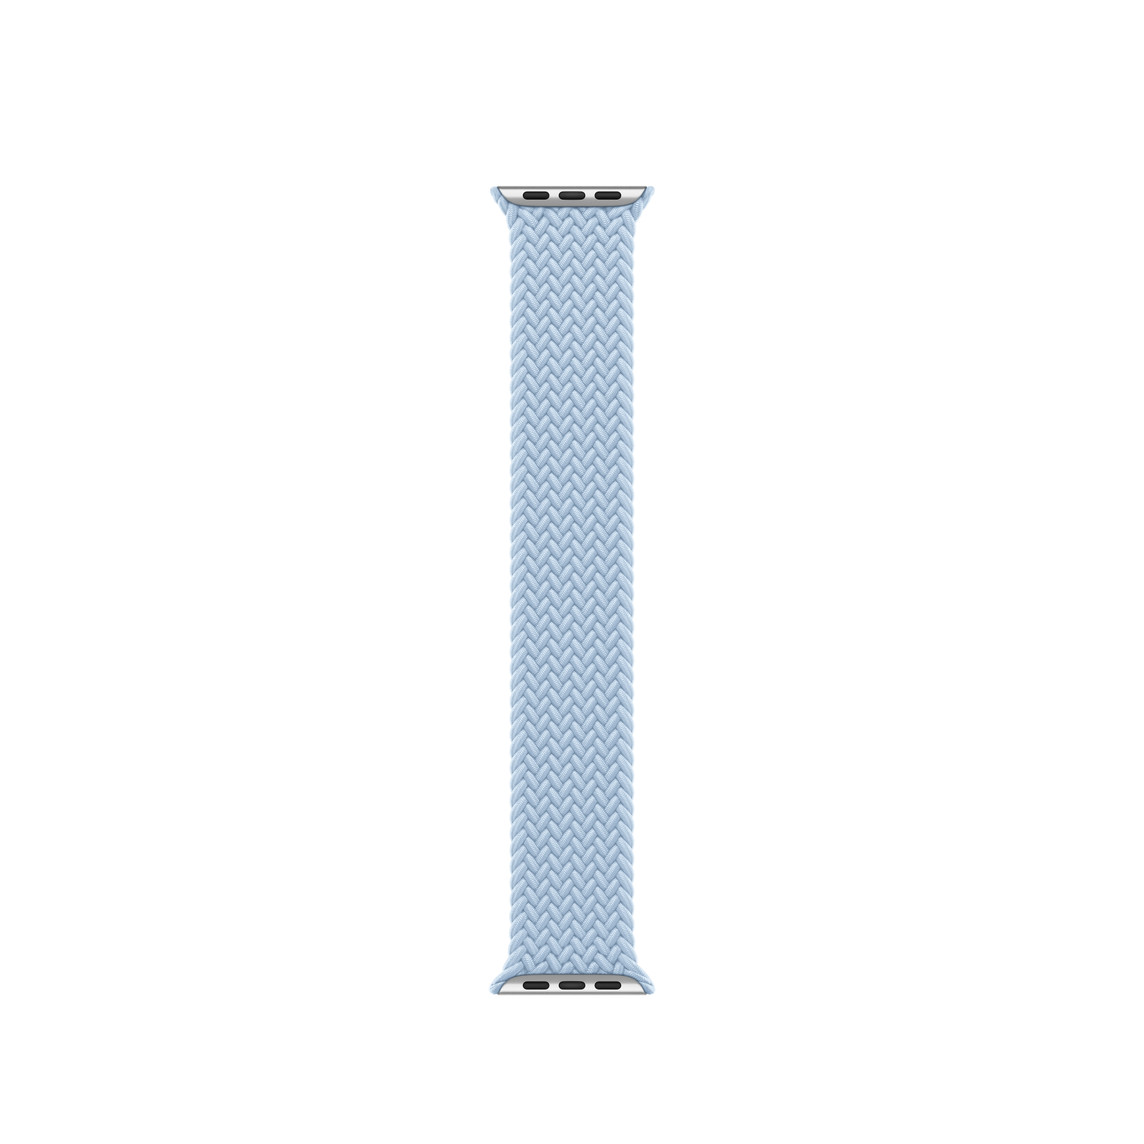 Lichtblauw gevlochten solobandje, geweven garen van polyester en silicone zonder sluiting of gesp